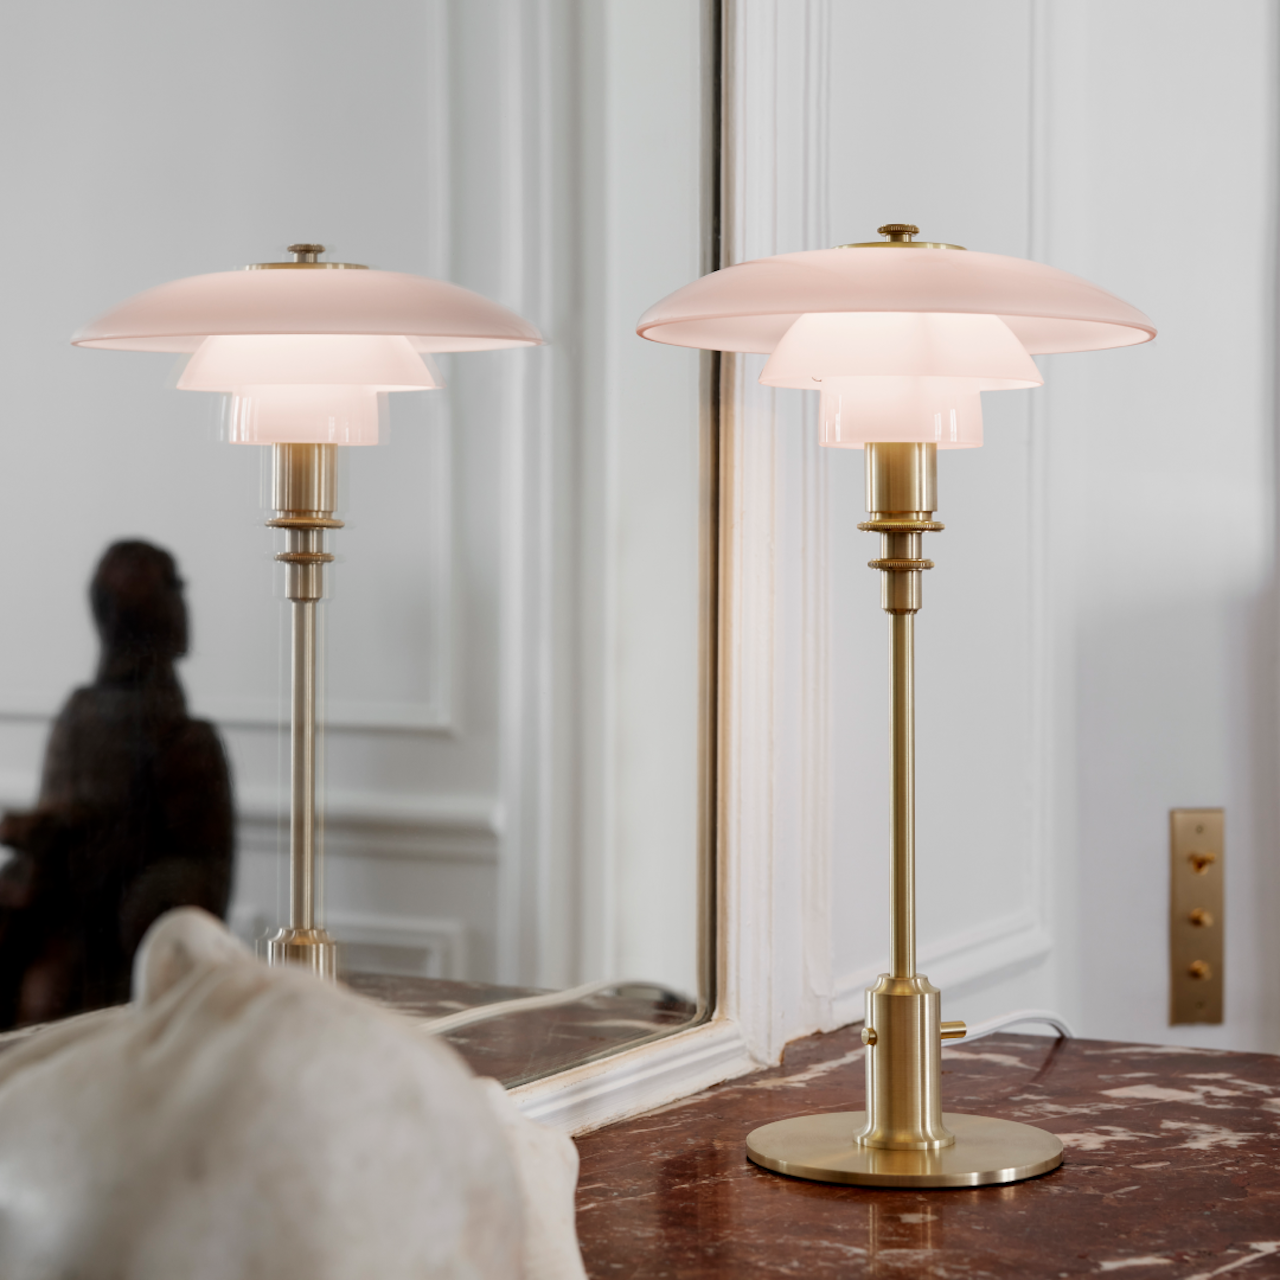 丹麥百年燈具品牌Louis Poulsen，推全新限量版「 PH Pale Rose」玫瑰色玻璃燈具